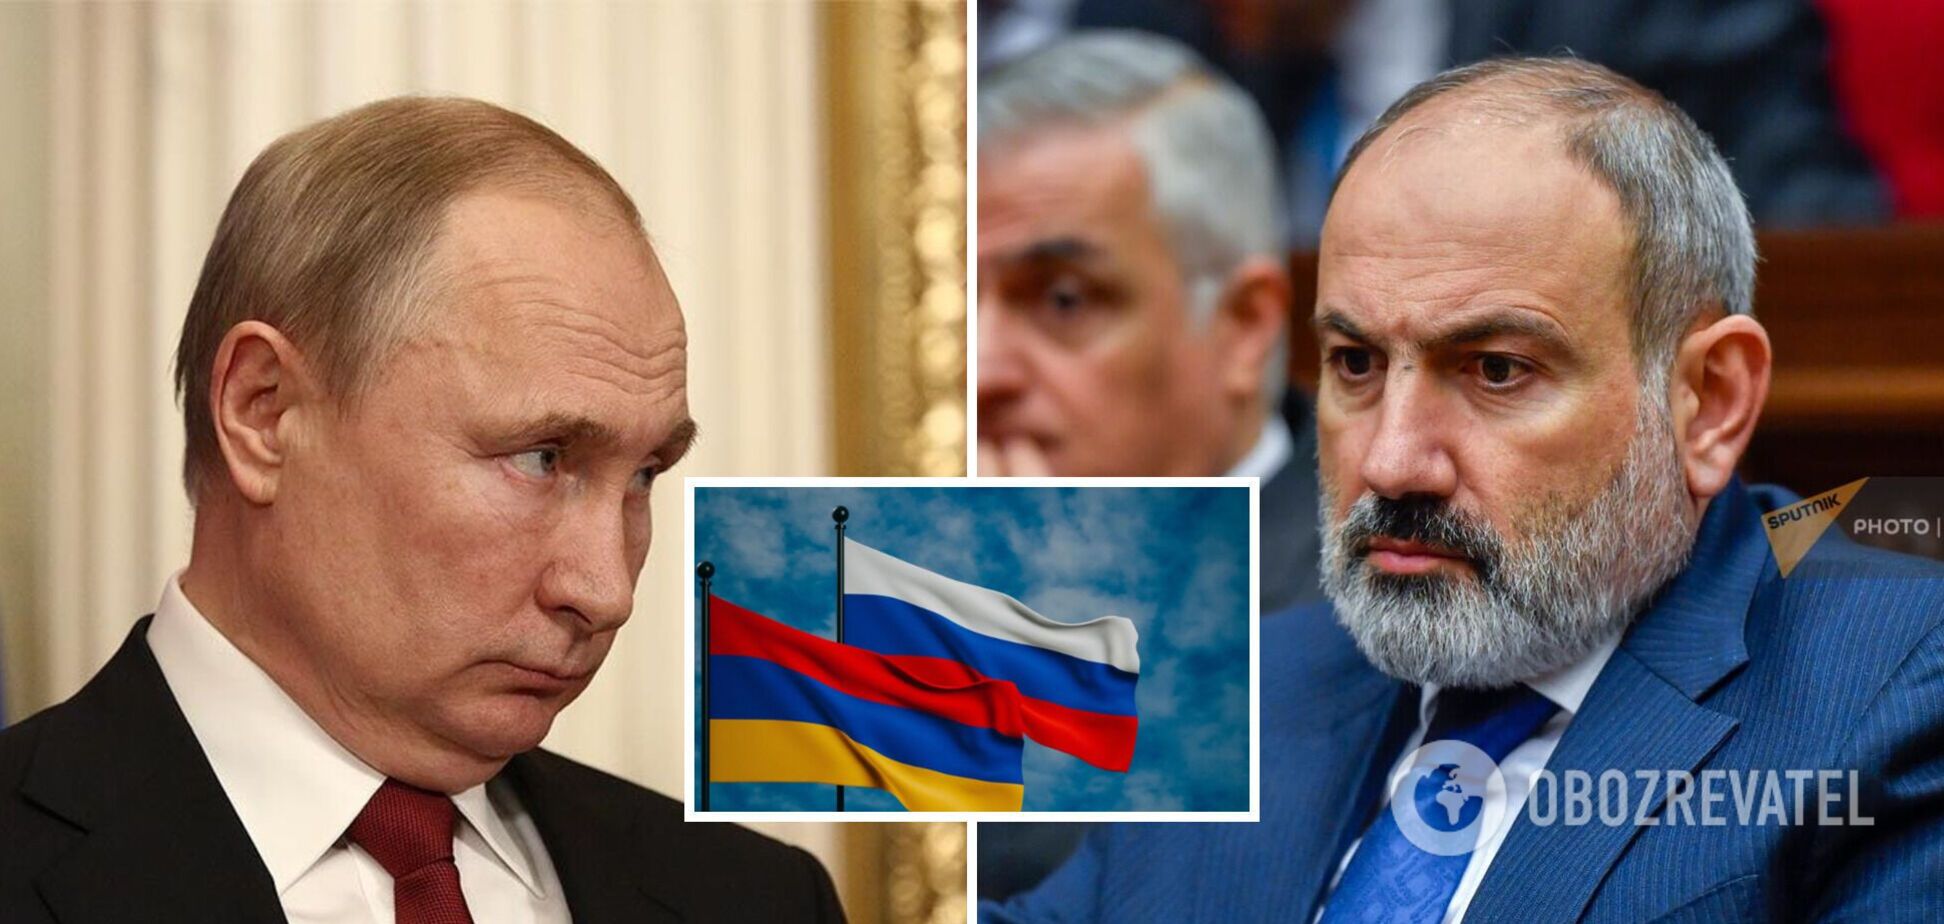 Вірменія більше не може покладатись на Росію як на гаранта своєї безпеки, – Пашинян